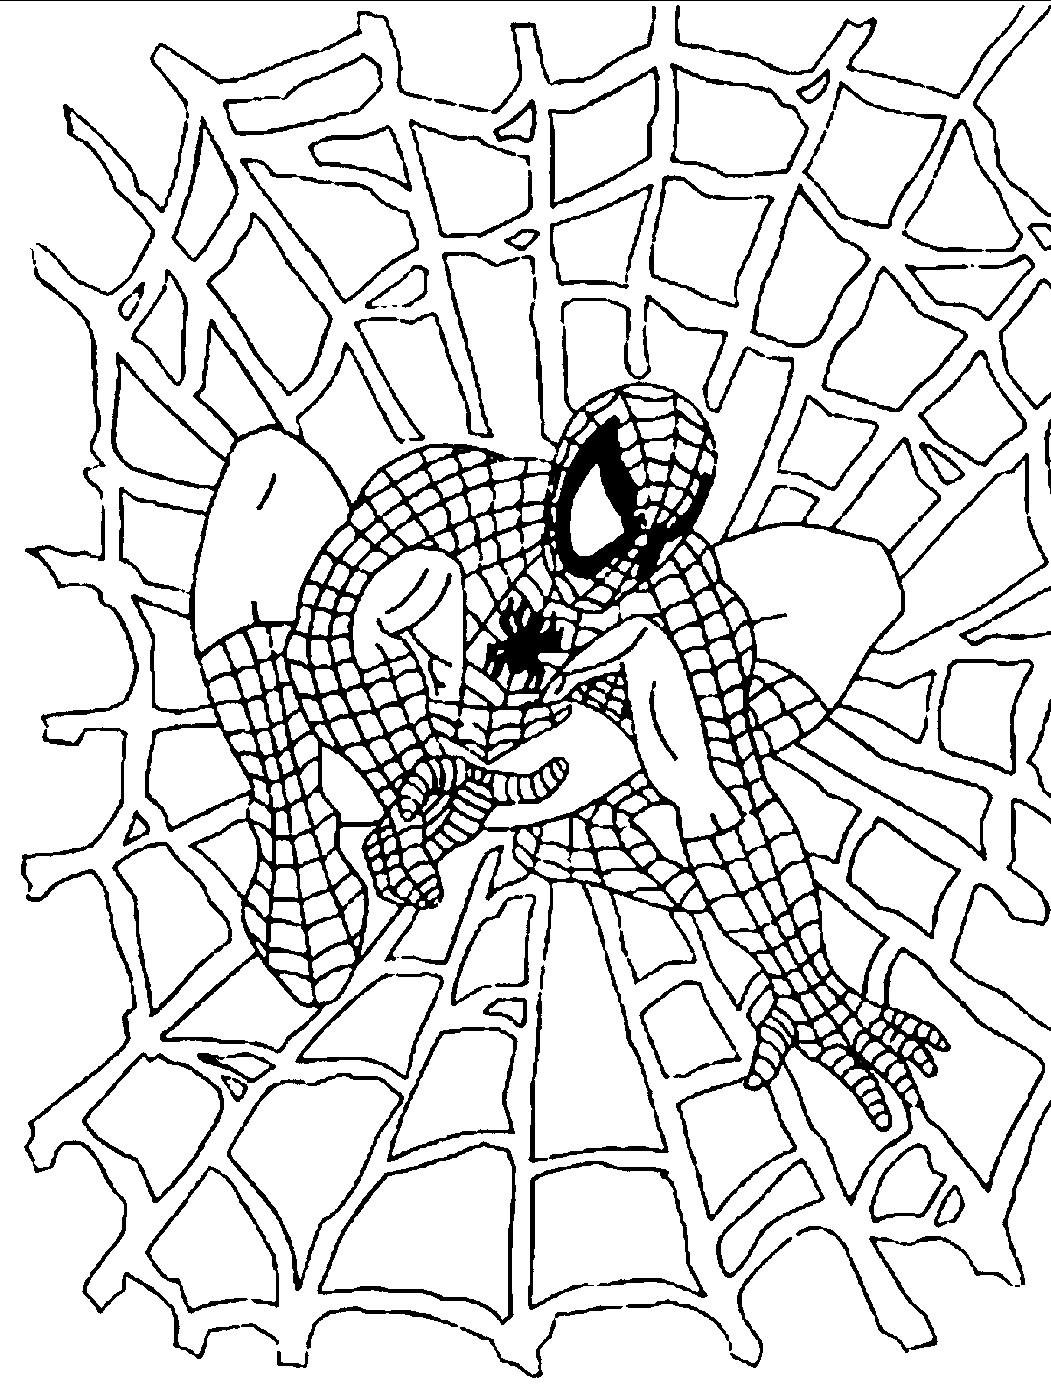 الرجل العنكبوت يقف على صفحة تلوين شبكة العنكبوت